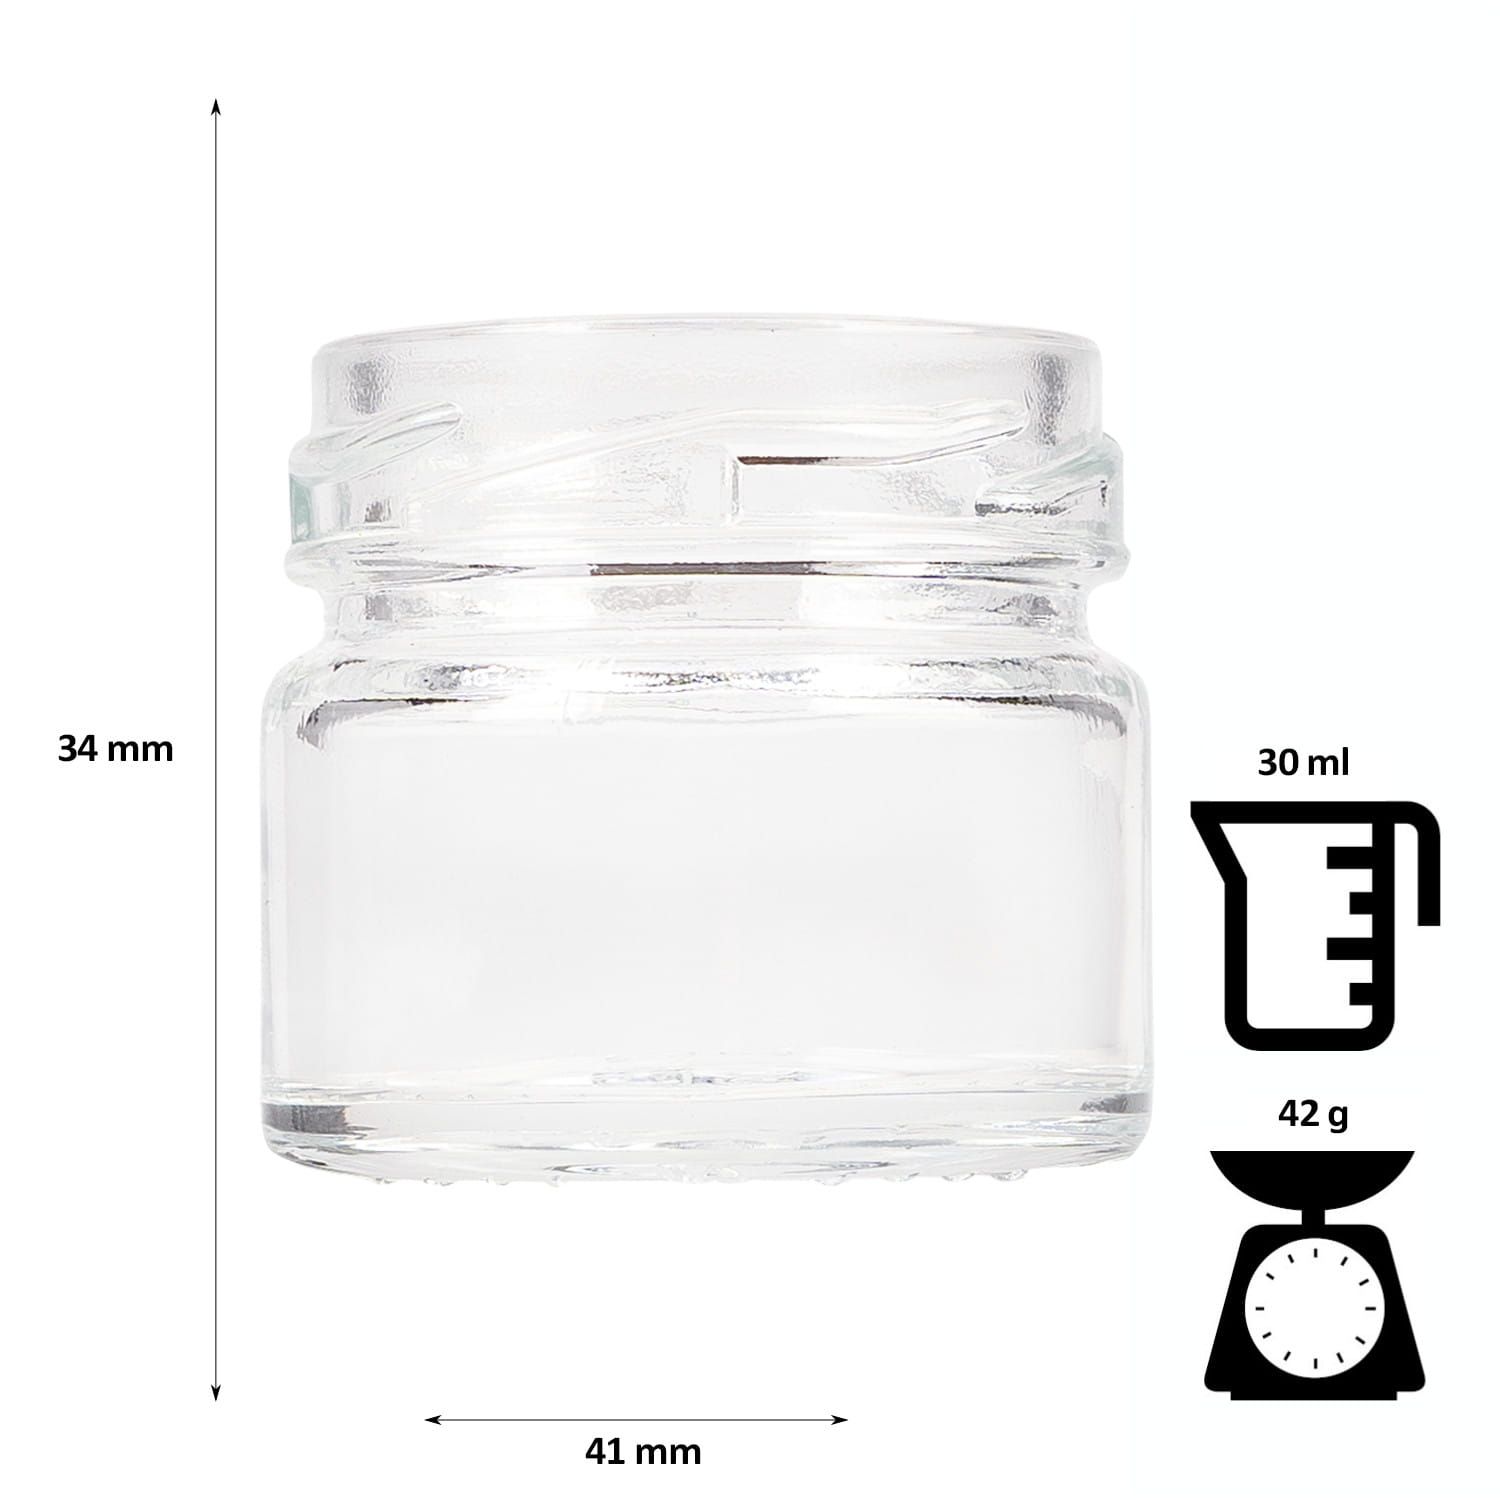 10x słoik szklany 30 ml na przyprawy dżem konfitury miód z zakrętką